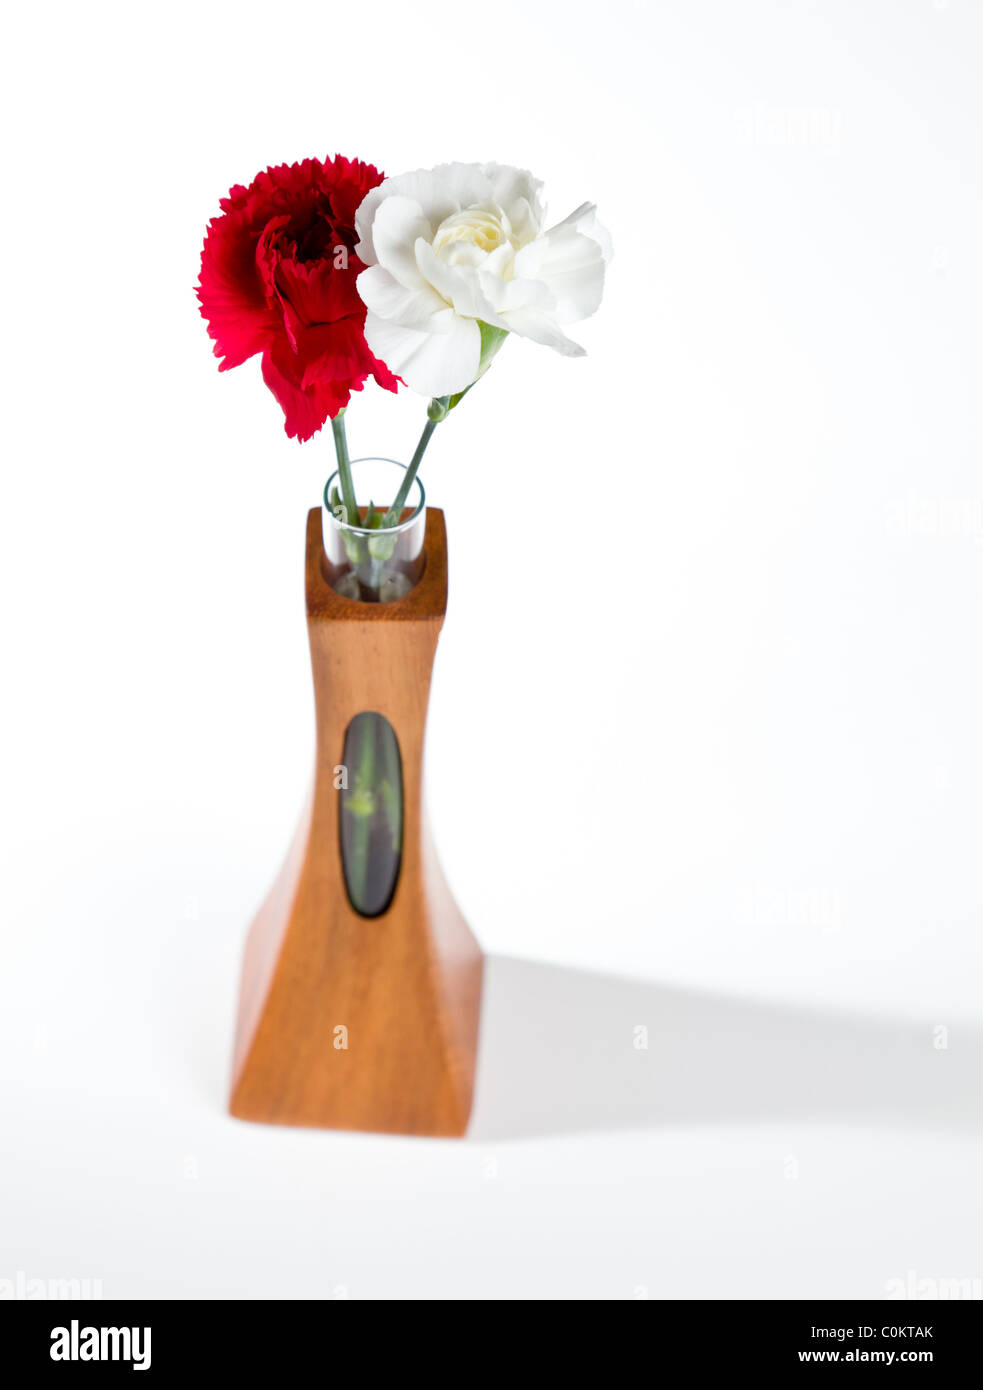 Seul le rouge et le blanc des fleurs d'oeillet de pulvérisation dans un vase en teck sculpté avec ouverture unique montrant la tige Banque D'Images